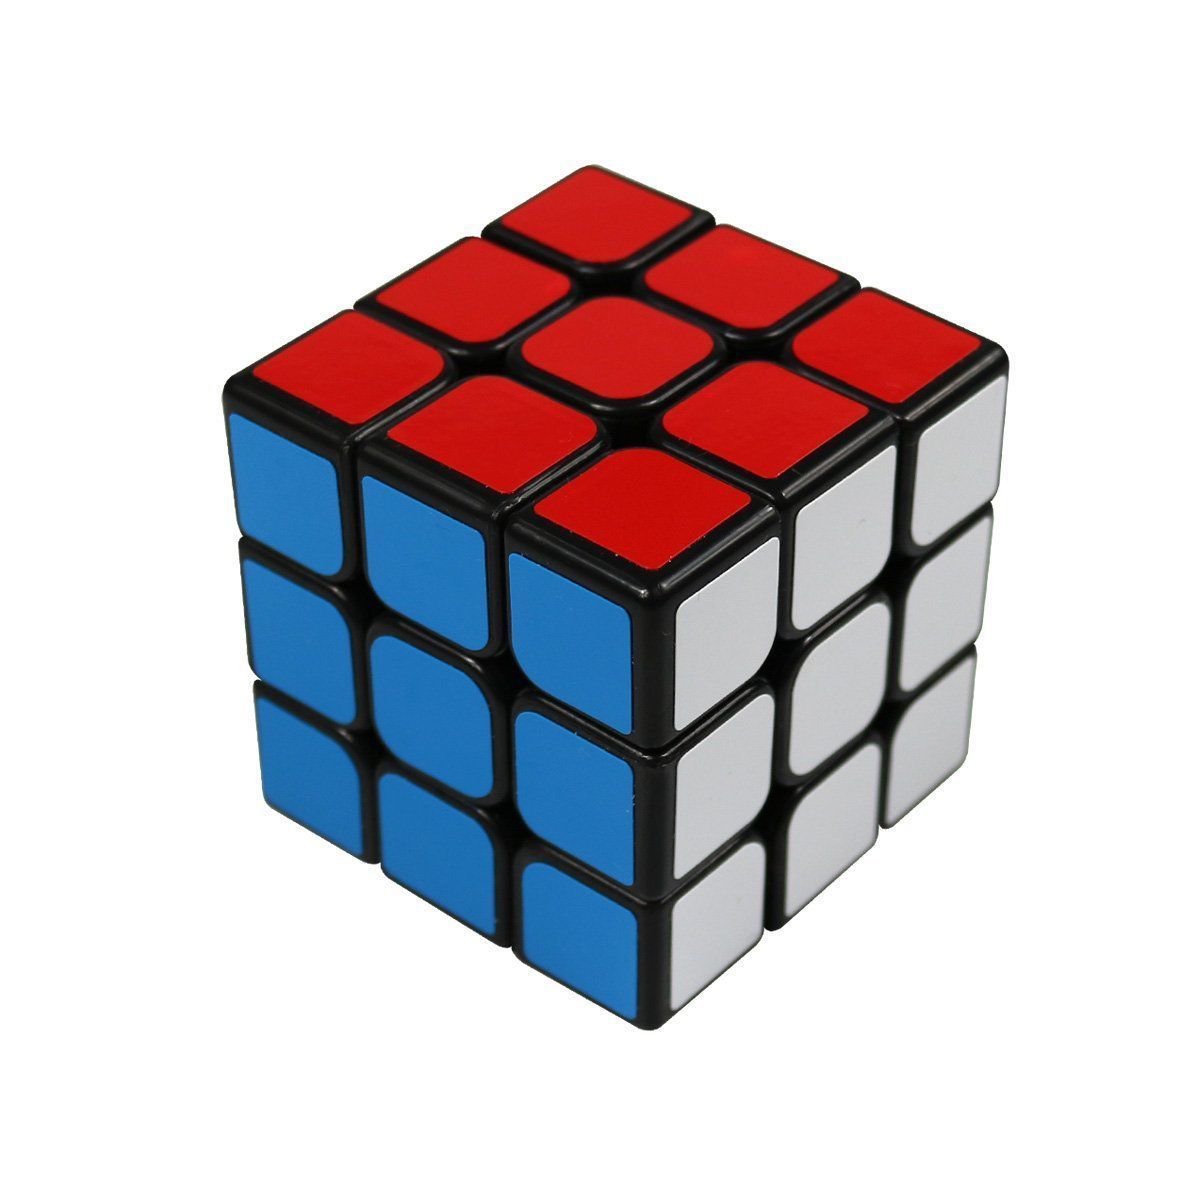 Головоломка разбери кубик. 3x3x3 Cube. Кубик Рубика 3x3x3. Rubik's Cube 3x3. Кубик Рубика 3x3 Ball Cube.